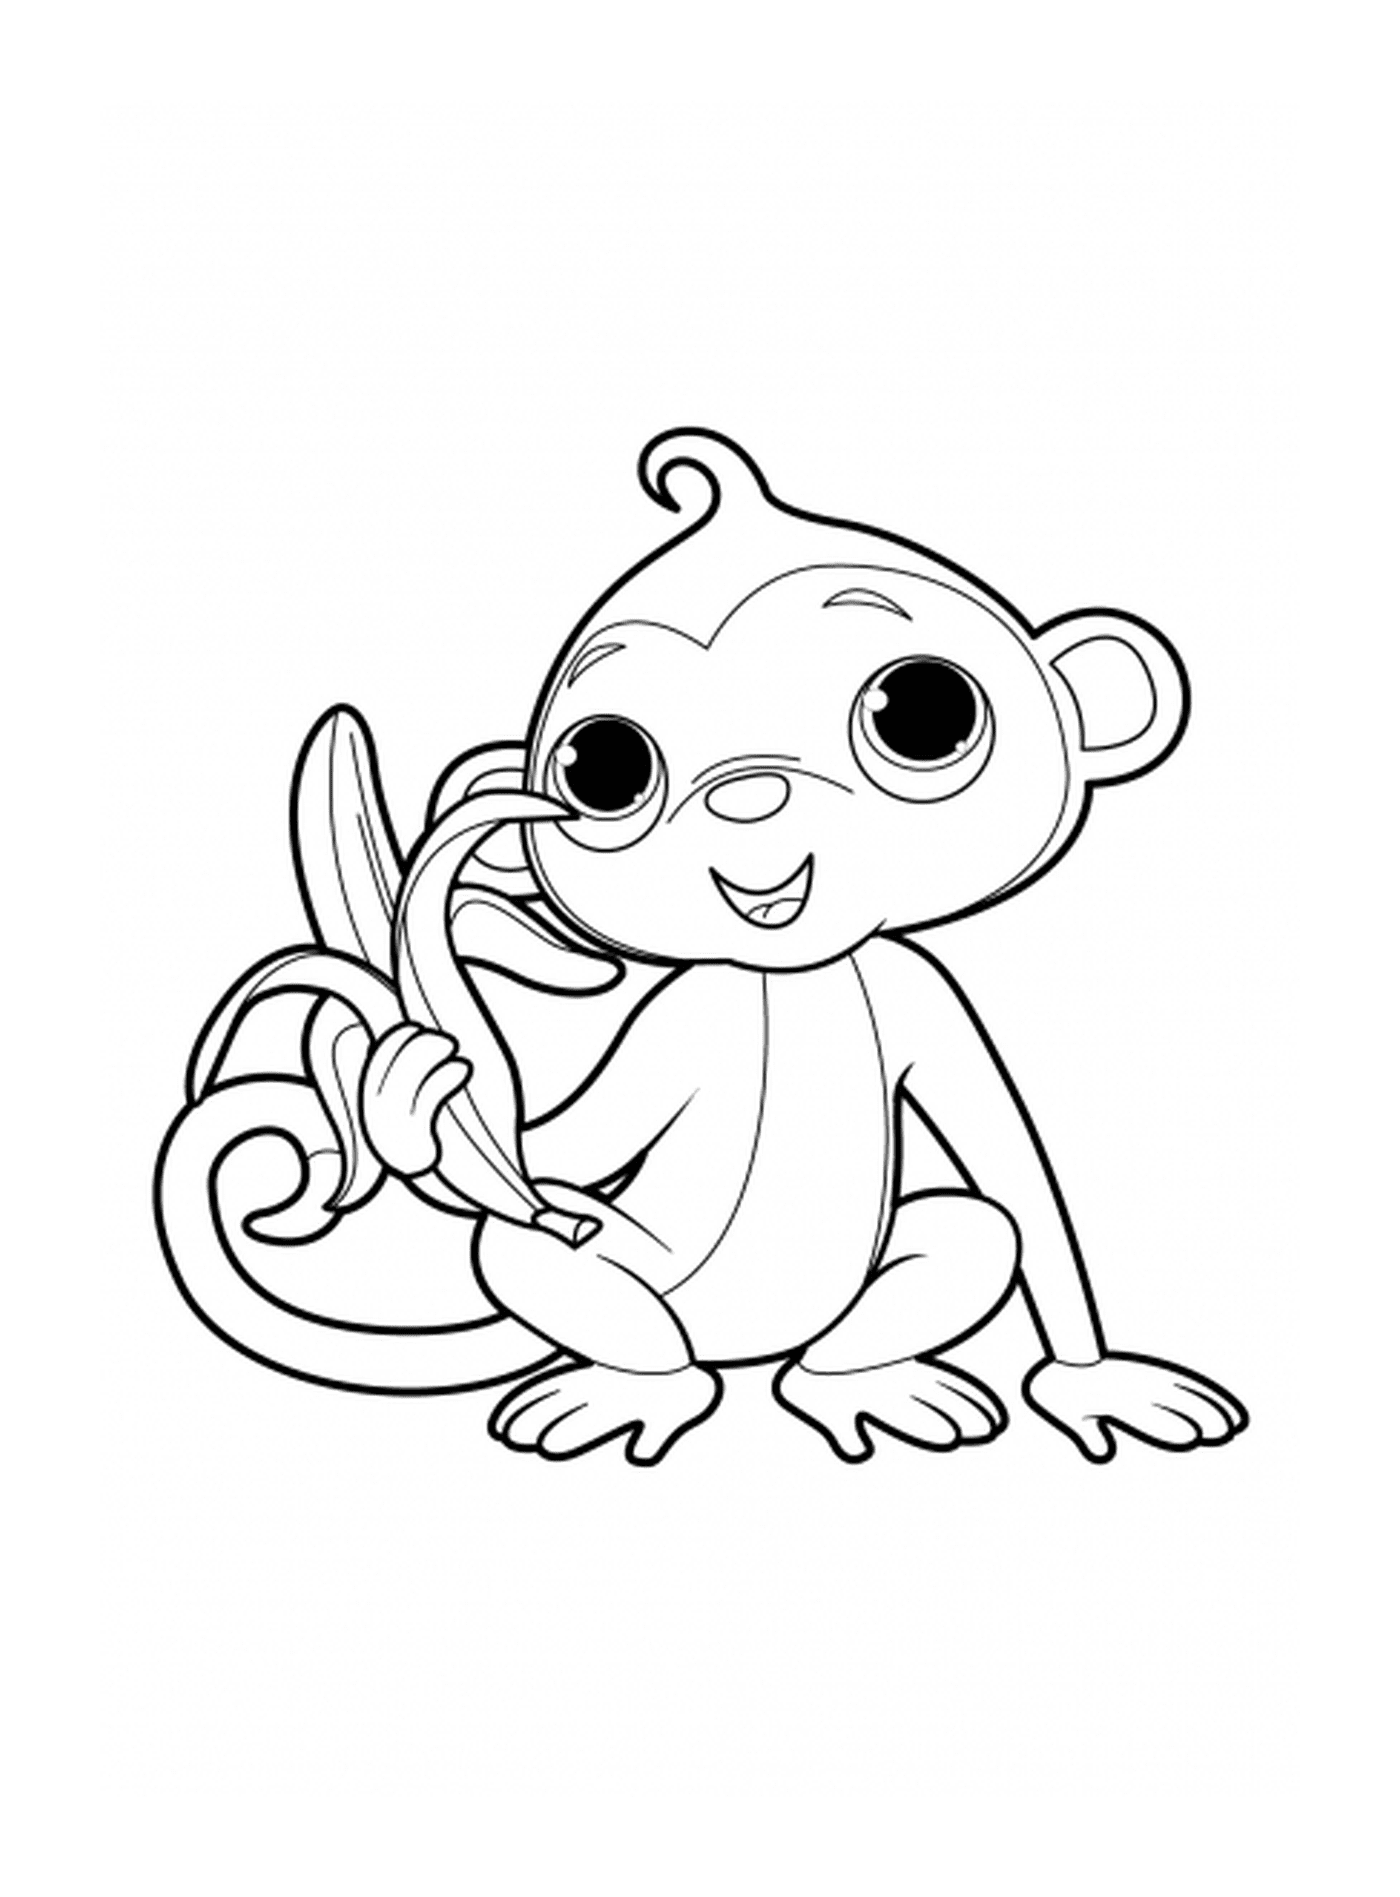  Monkey mit einer leckeren Banane 